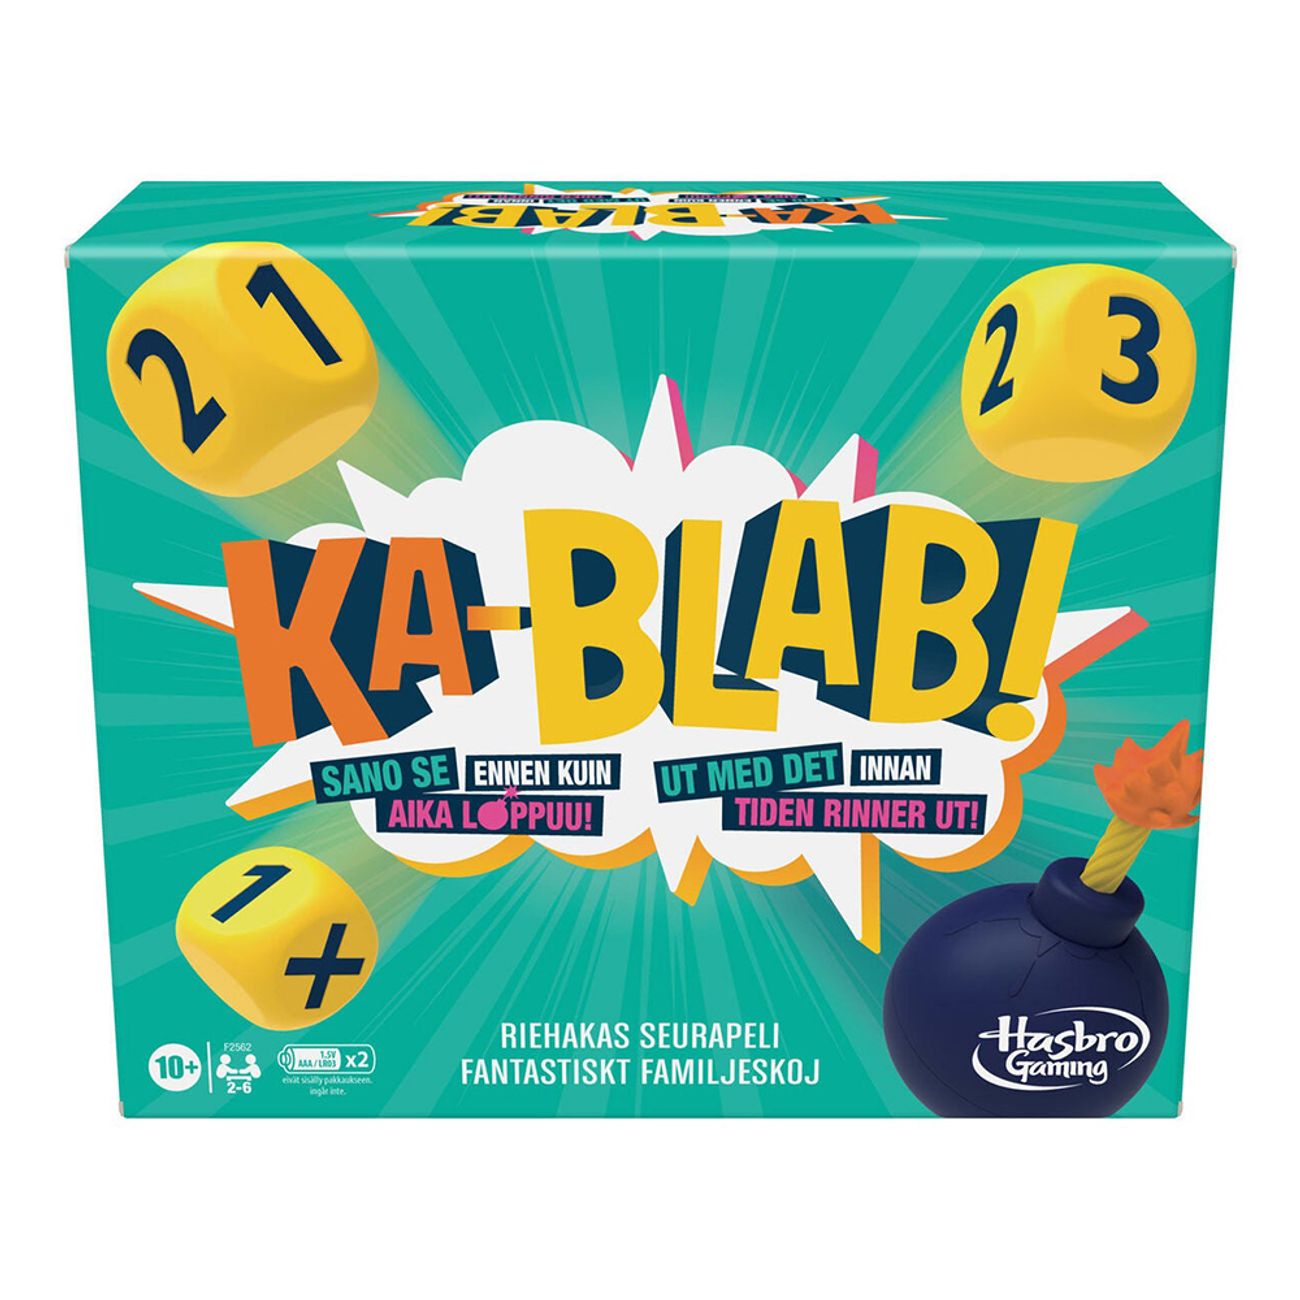 hasbro-kablab-sallskapsspel-80913-1